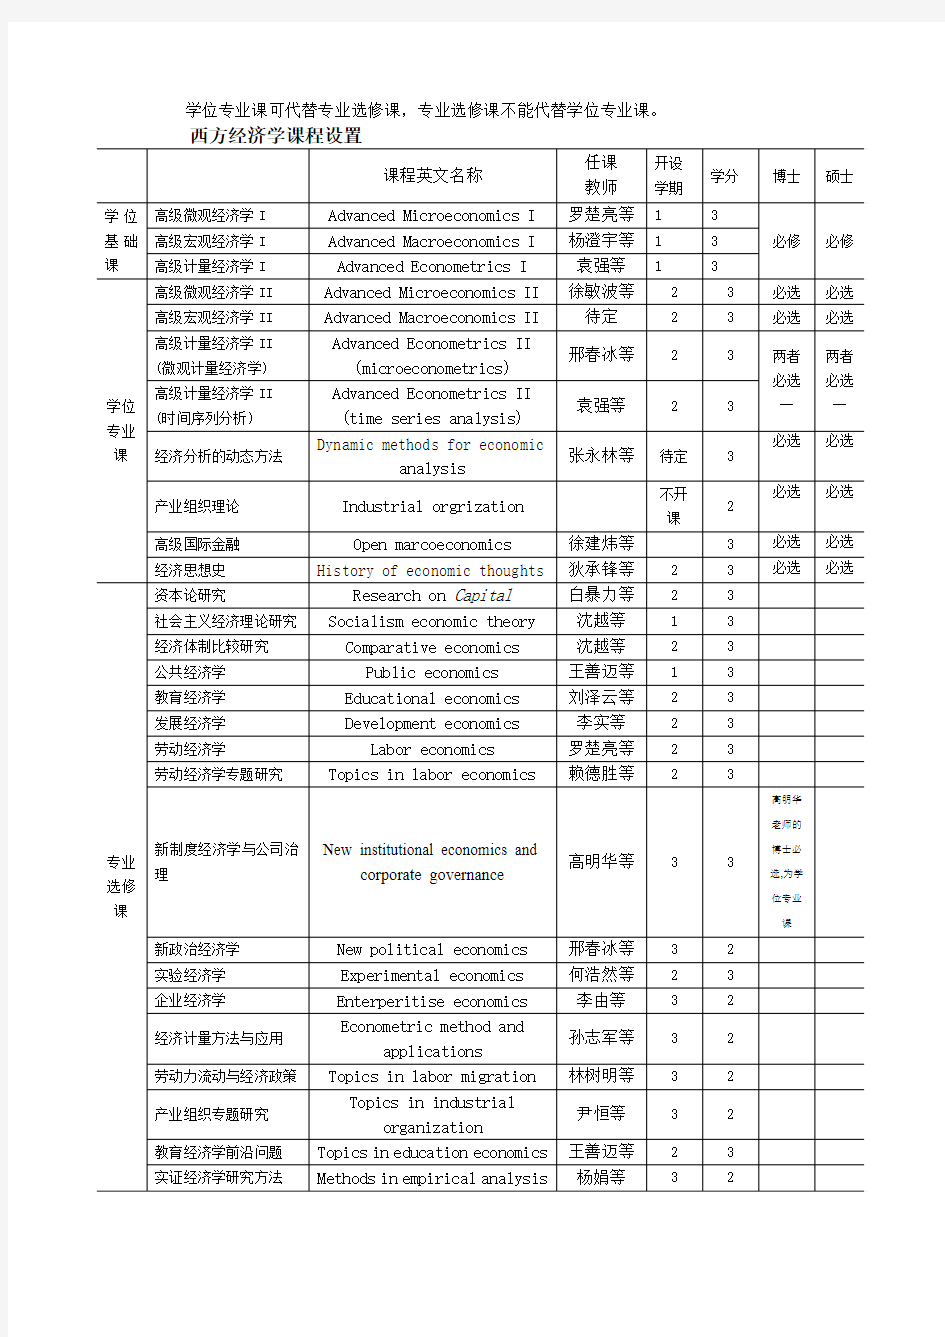 北京师范大学经济与工商管理学院博士、硕士生课程表